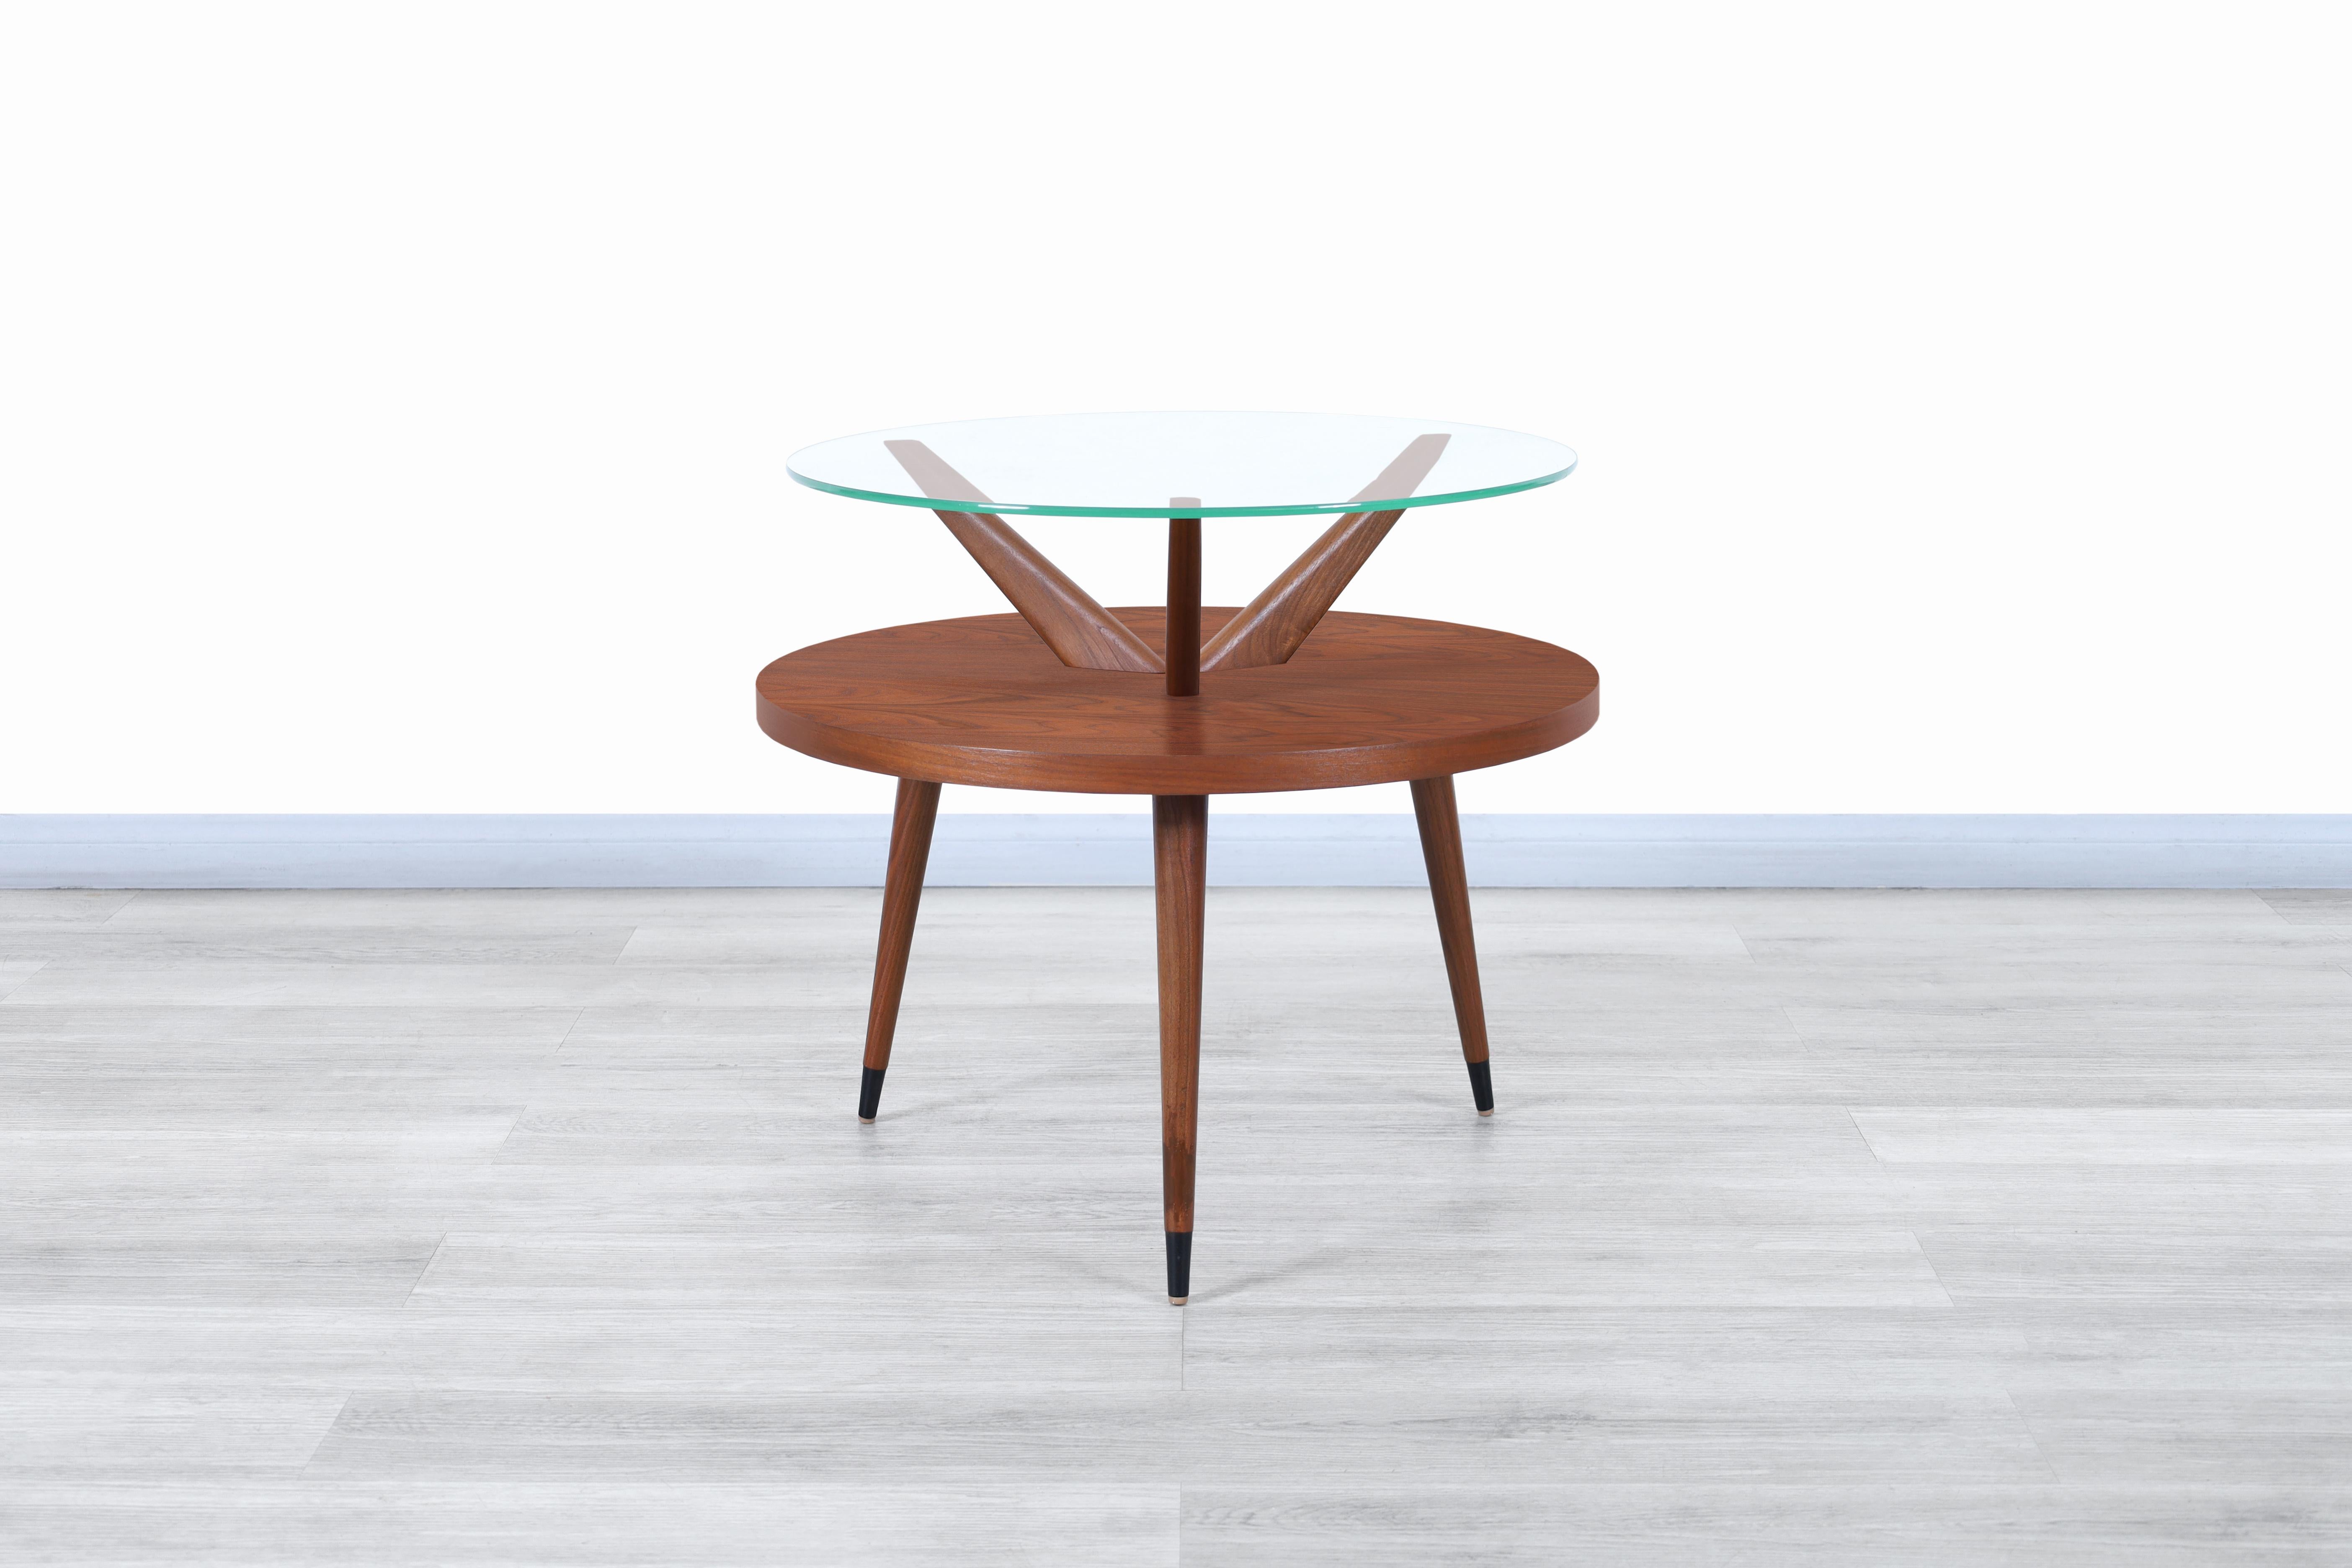 Wunderschöner zweistöckiger Tisch aus Nussbaum und Glas, entworfen und hergestellt in den Vereinigten Staaten, ca. 1960er Jahre. Dieser Tisch zeichnet sich durch ein ganz besonderes Design aus, bei dem die Linienführung und die für die Konstruktion